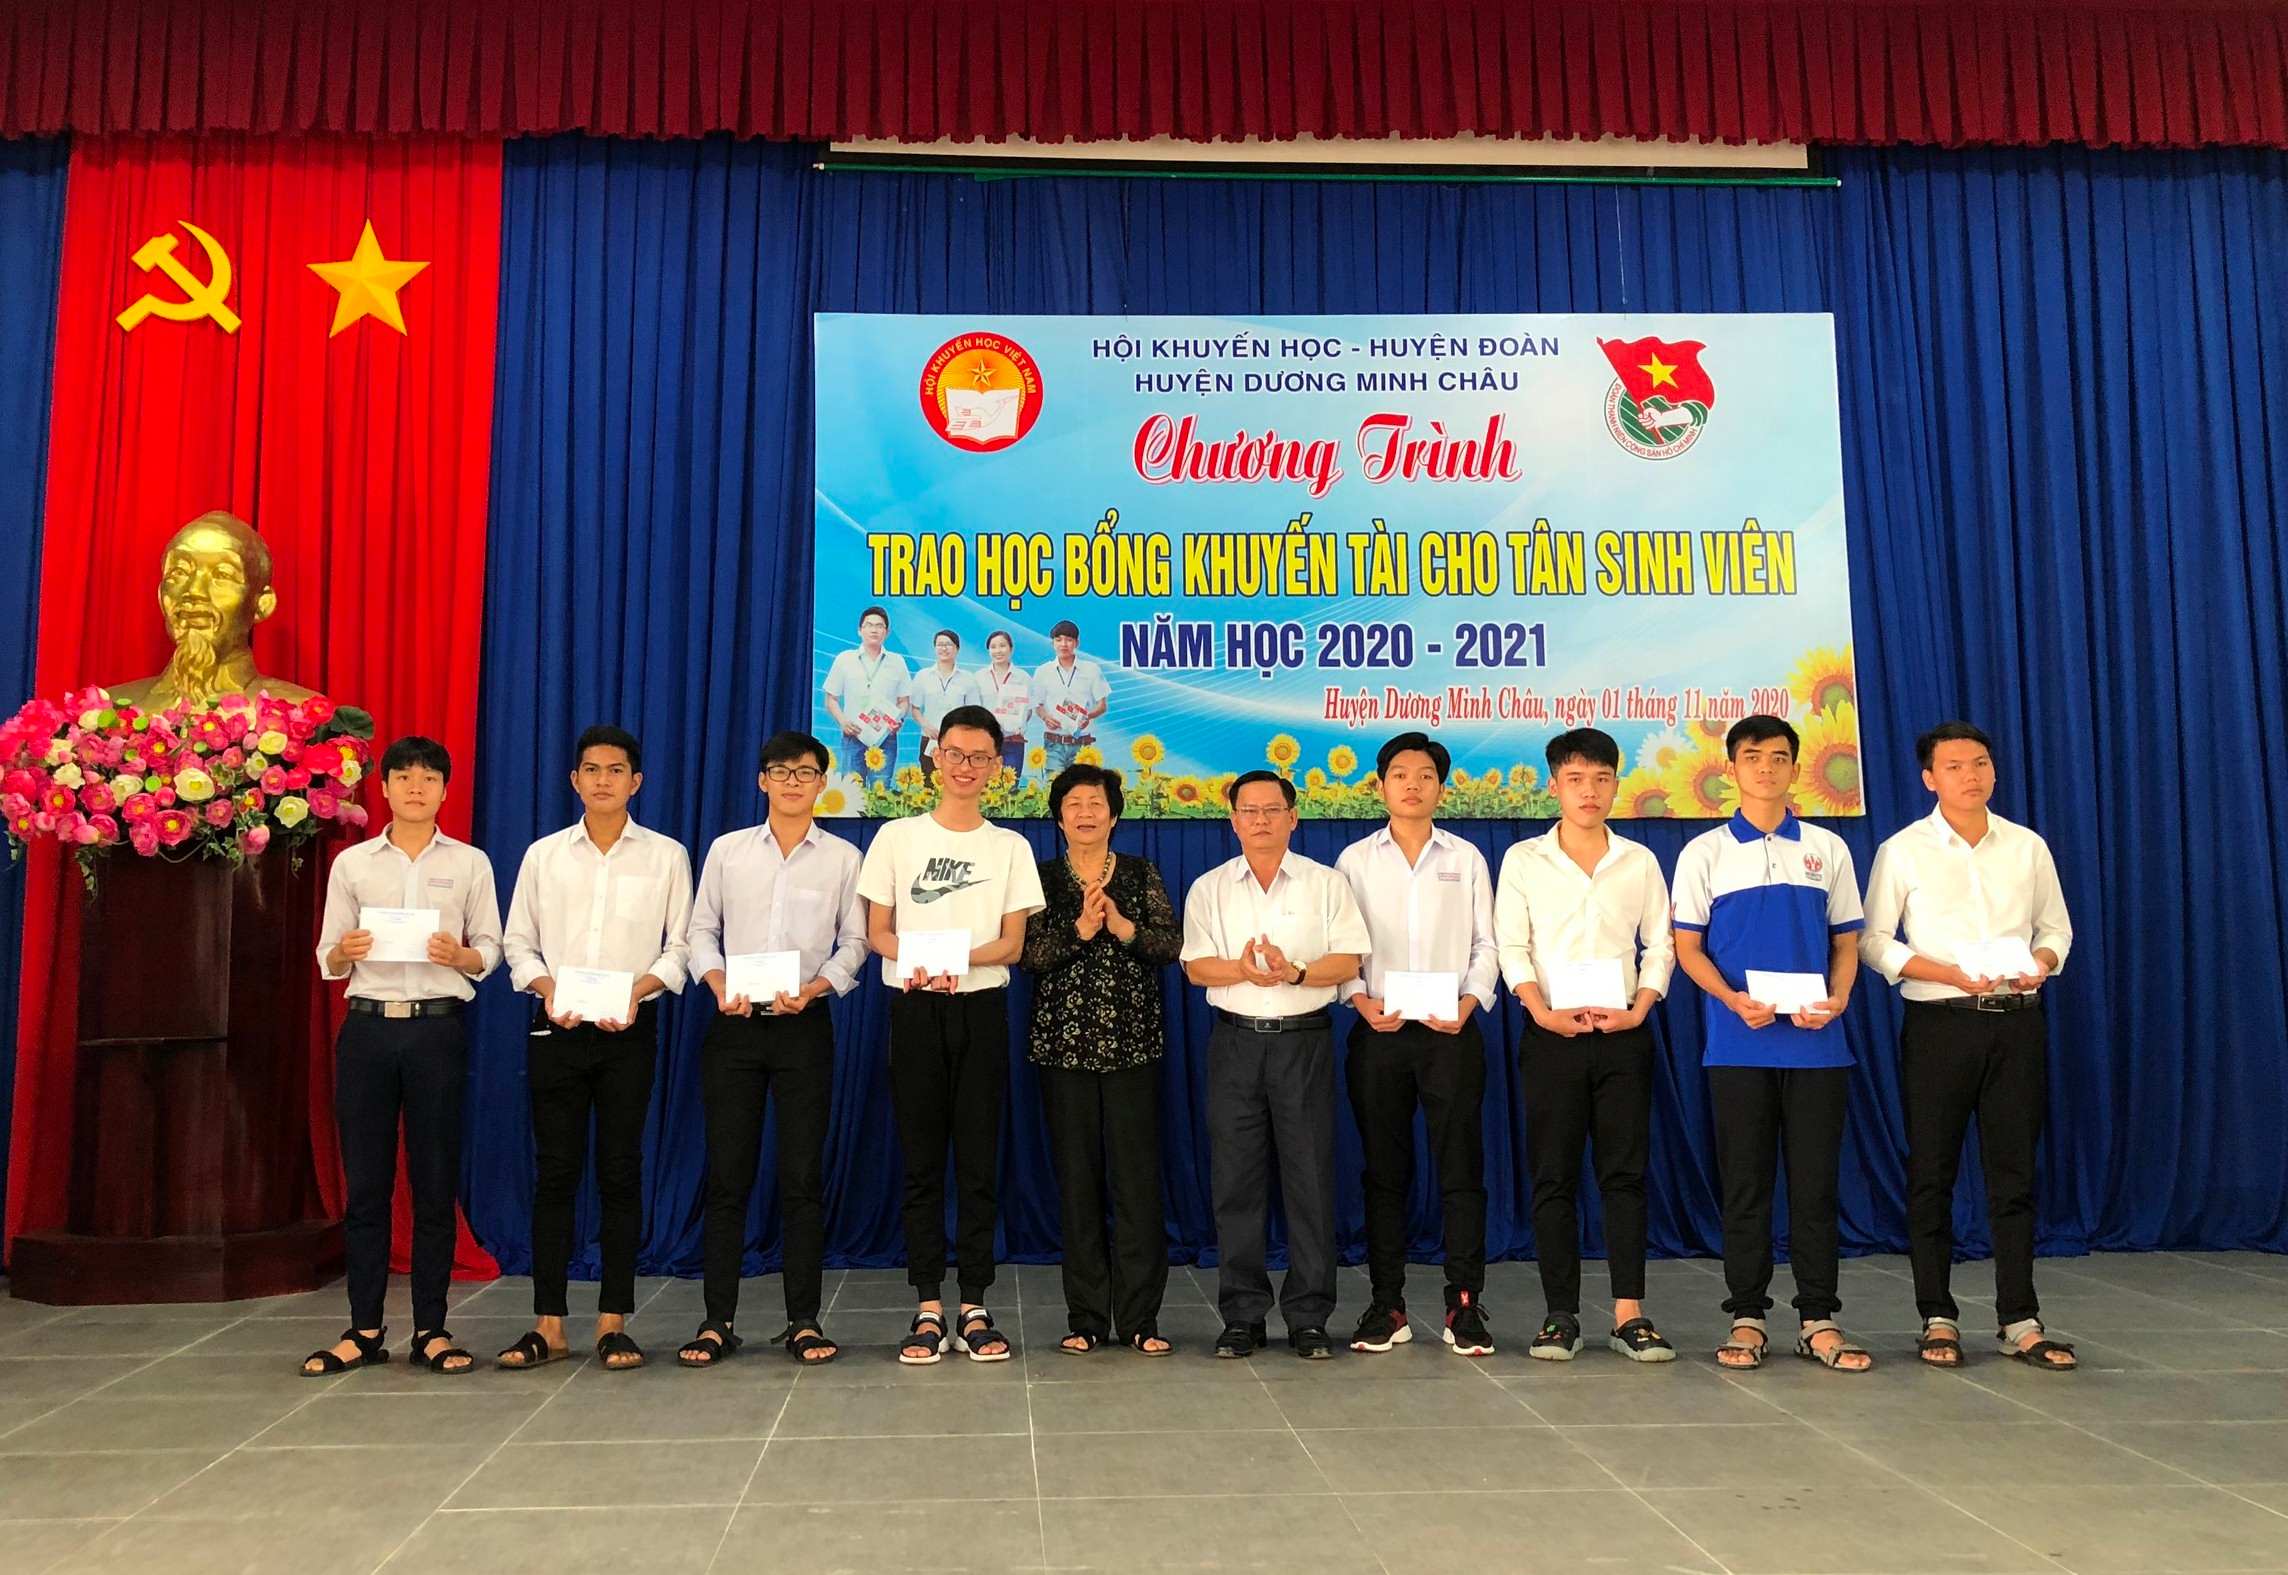 Dương Minh Châu trao học bổng khuyến tài cho tân sinh viên